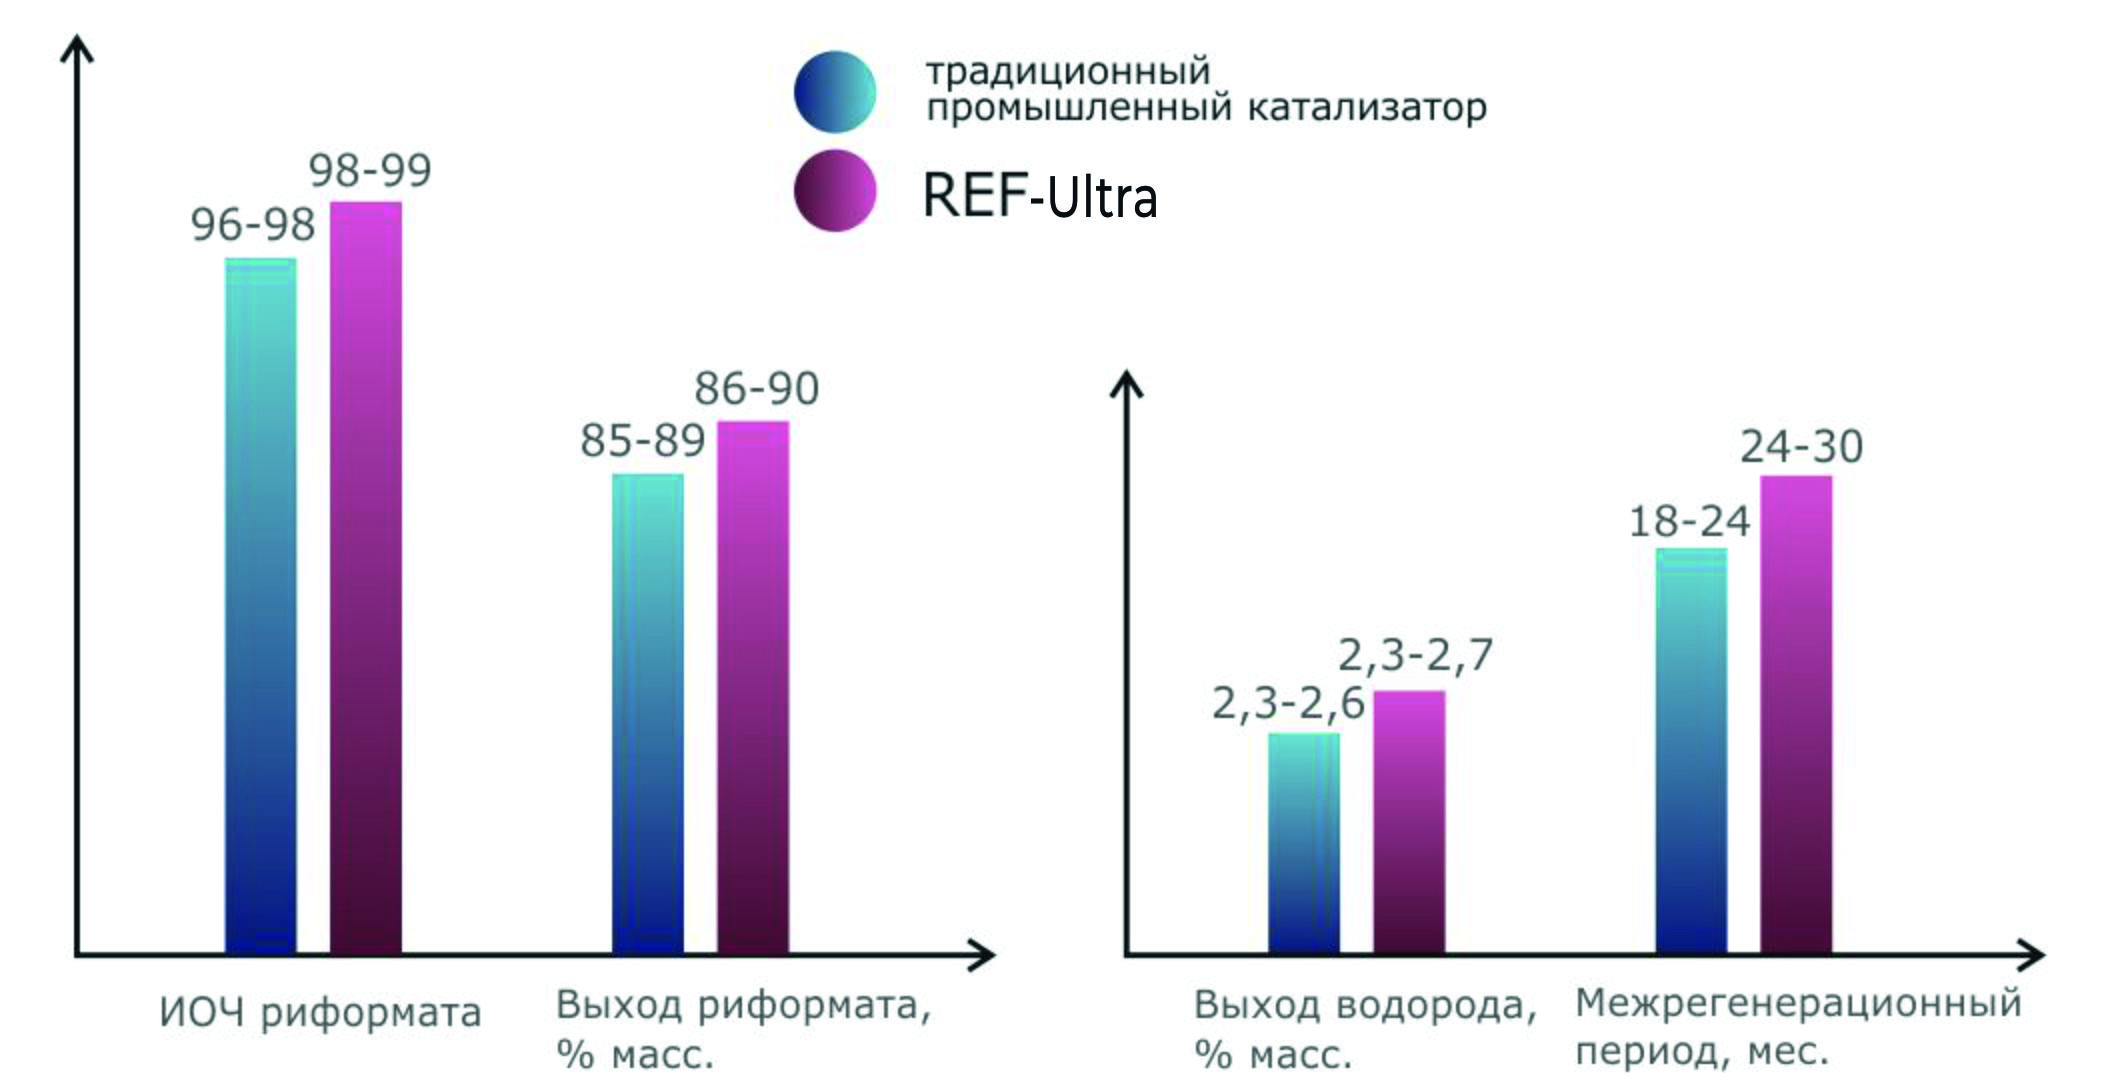 Сравнение показателей получаемого риформата с применение традиционного катализатора стационарного риформинга и катализатора REF <sup>Ultra</sup> при сходных условиях работы.